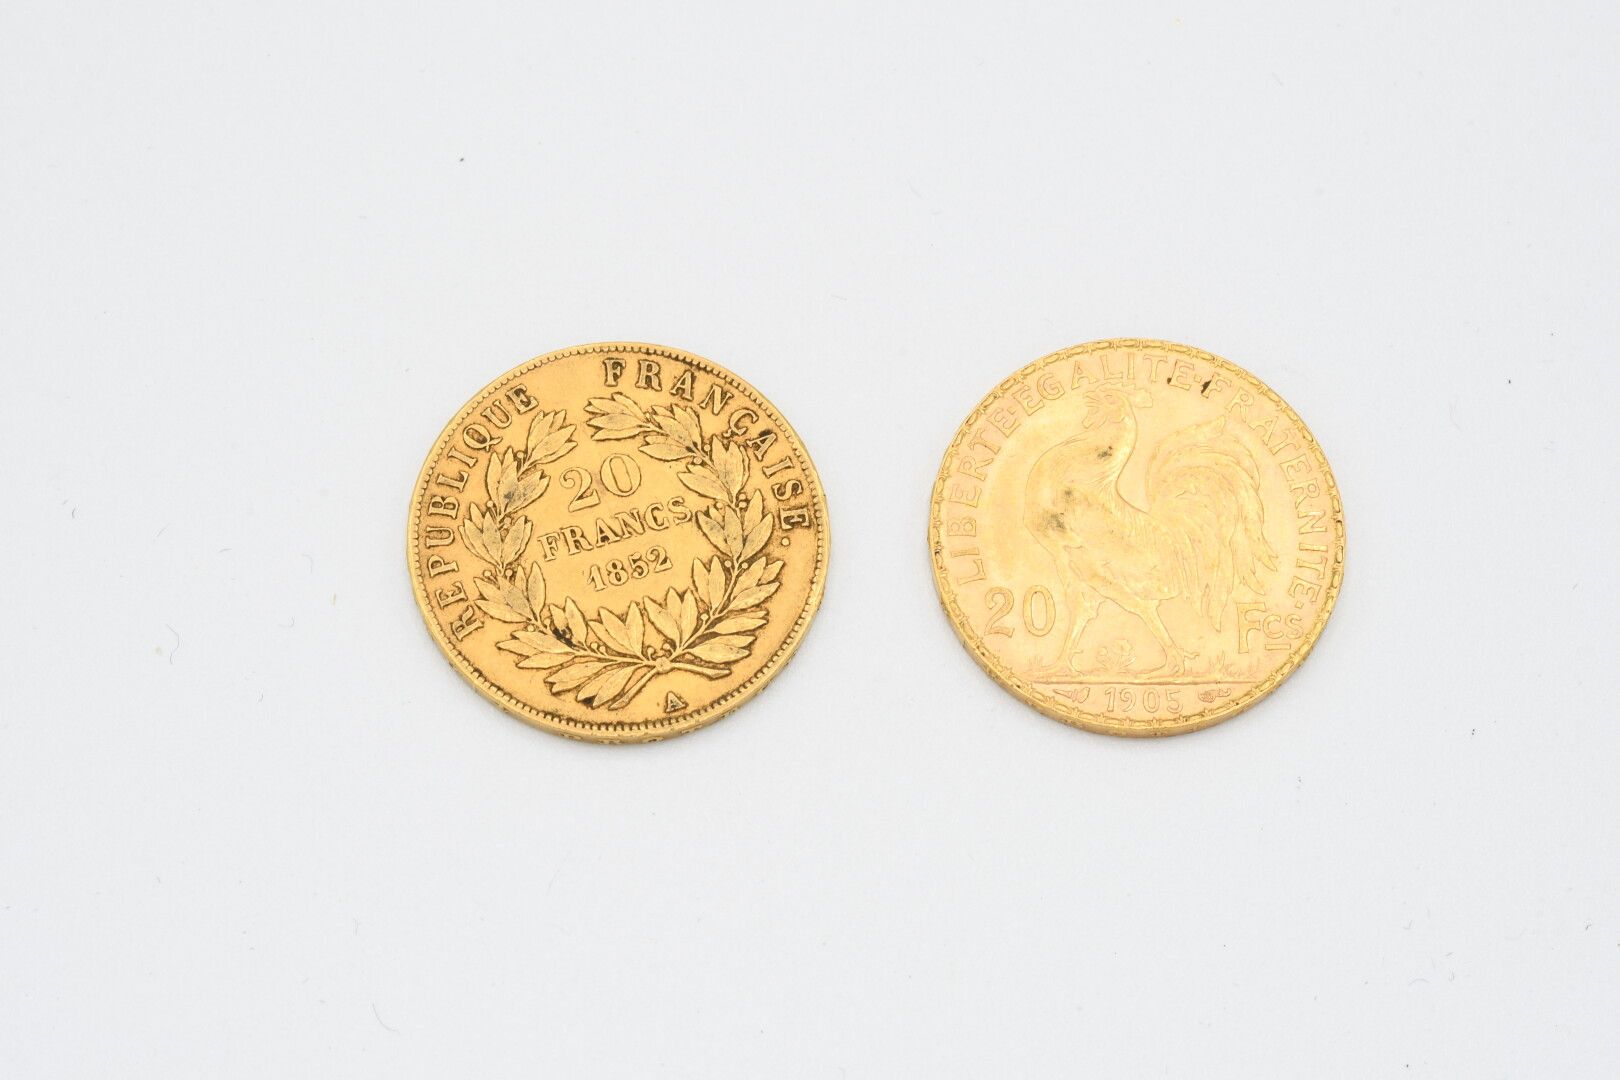 Null MONNAIES d'OR (2) : 20 francs 1852 et 1905. Poids : 12,9 g

Frais acheteur &hellip;